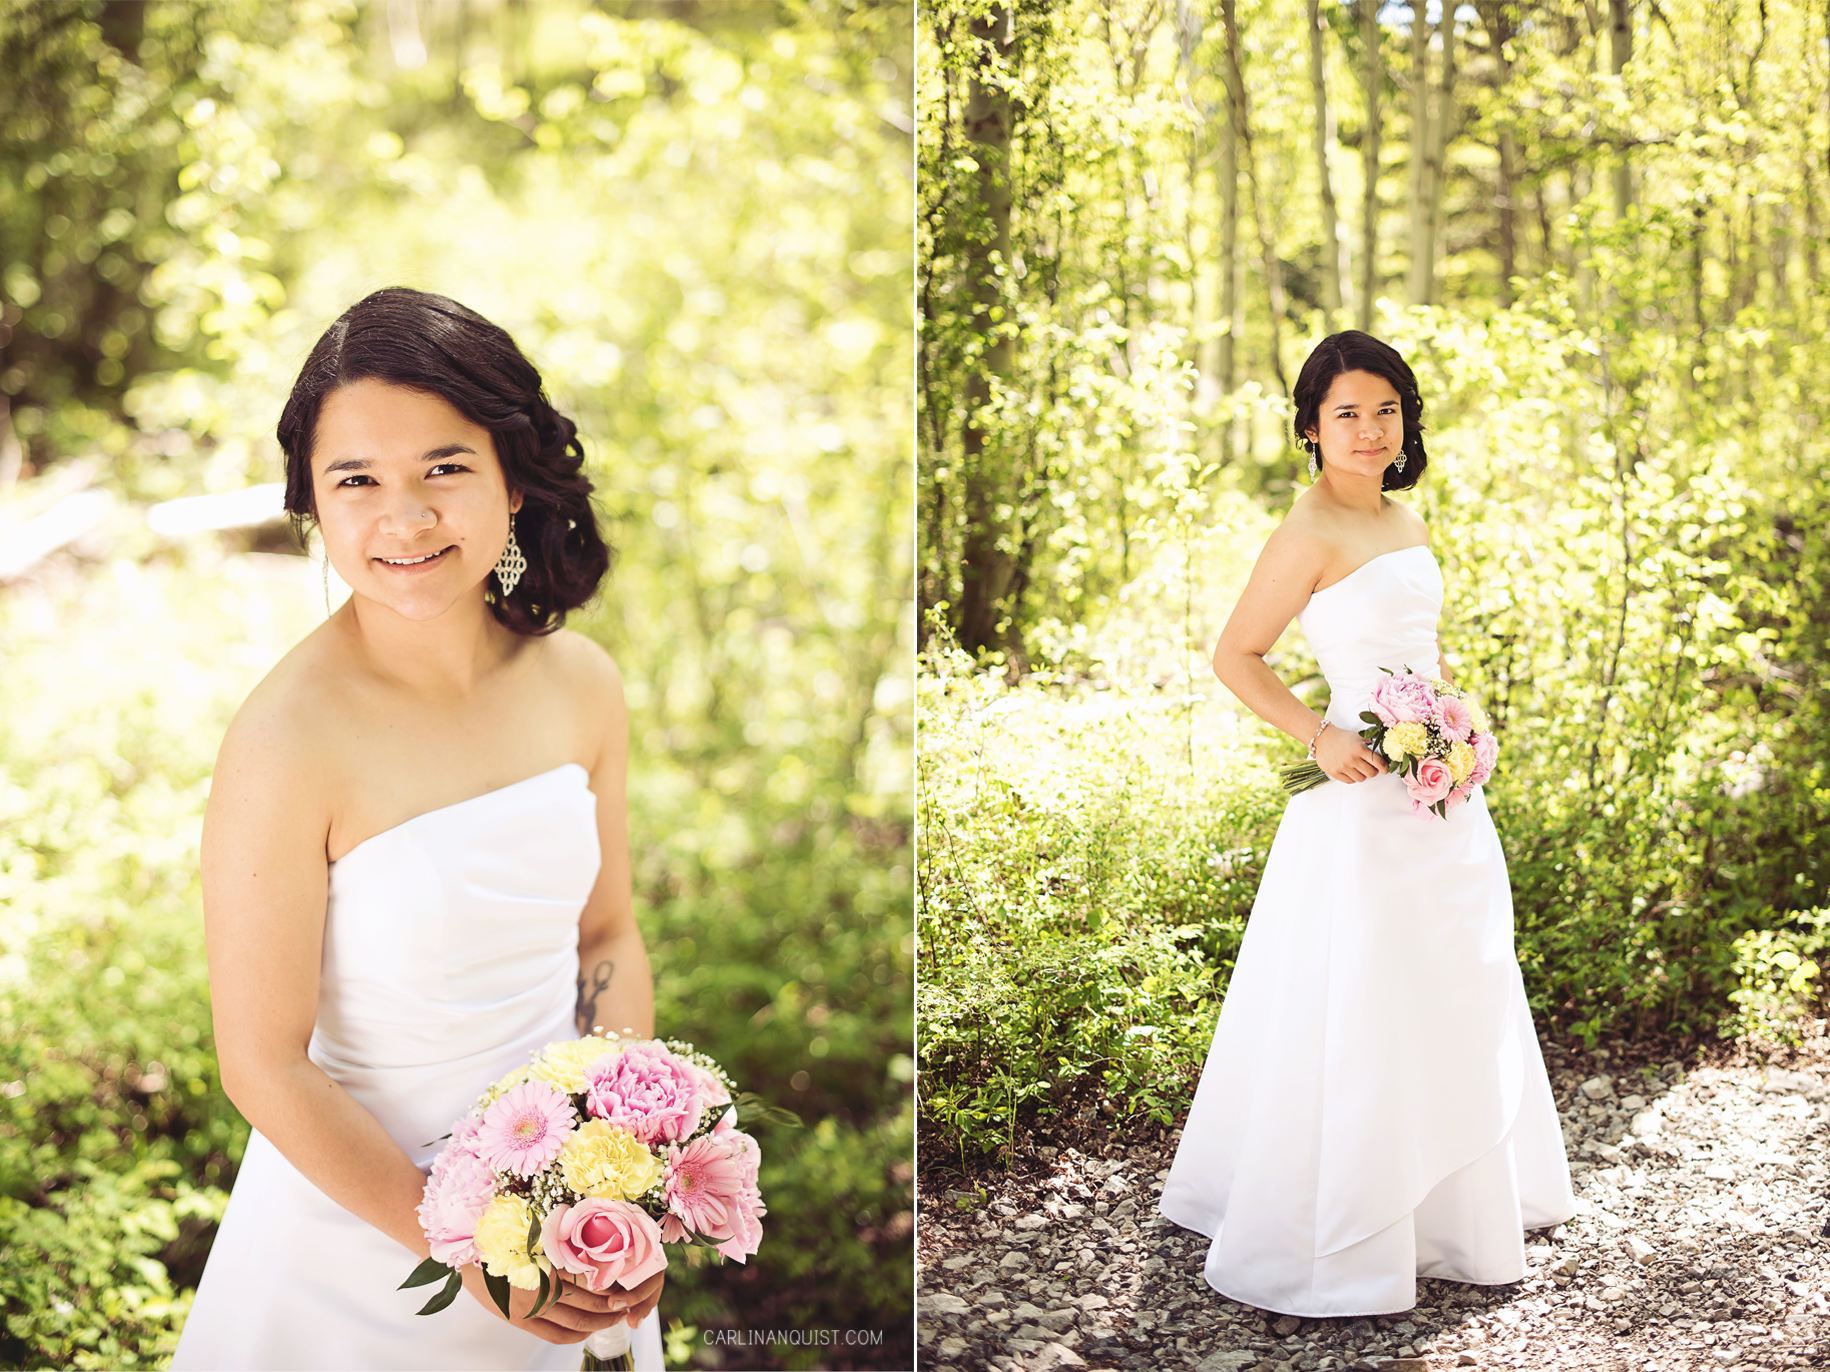 Bridal Portrait | Bridal Bouquet | Crowsnest Pass Wedding Photographers | Carlin Anquist Photography